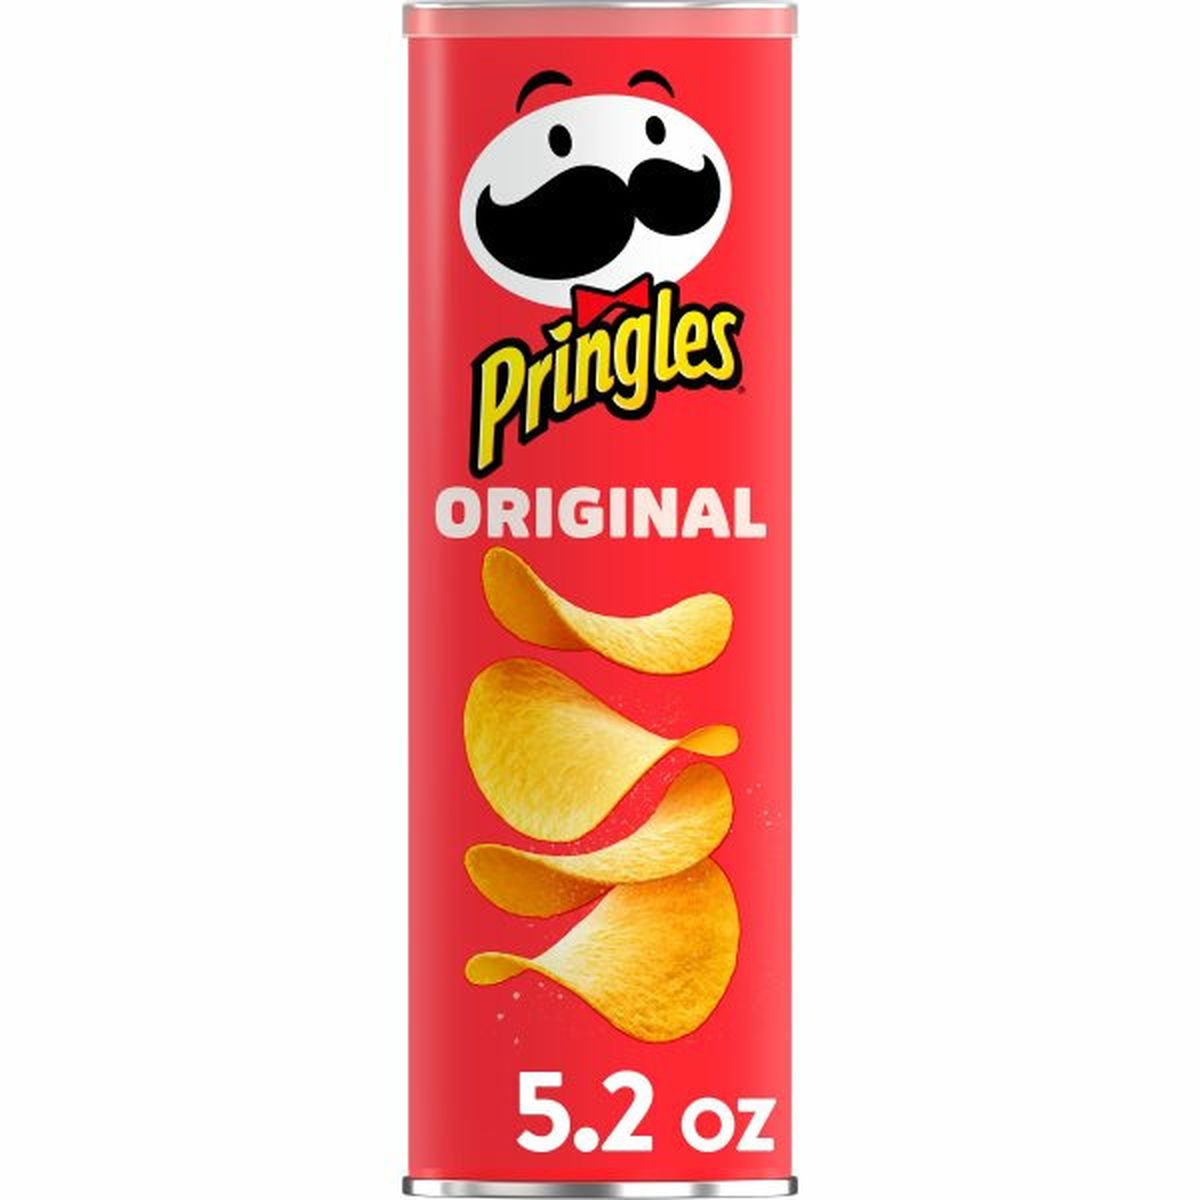 Calories in Pringles Salty Snacks Pringles Potato Crisps Chips, Original, Snacks On The Go, 5.2oz